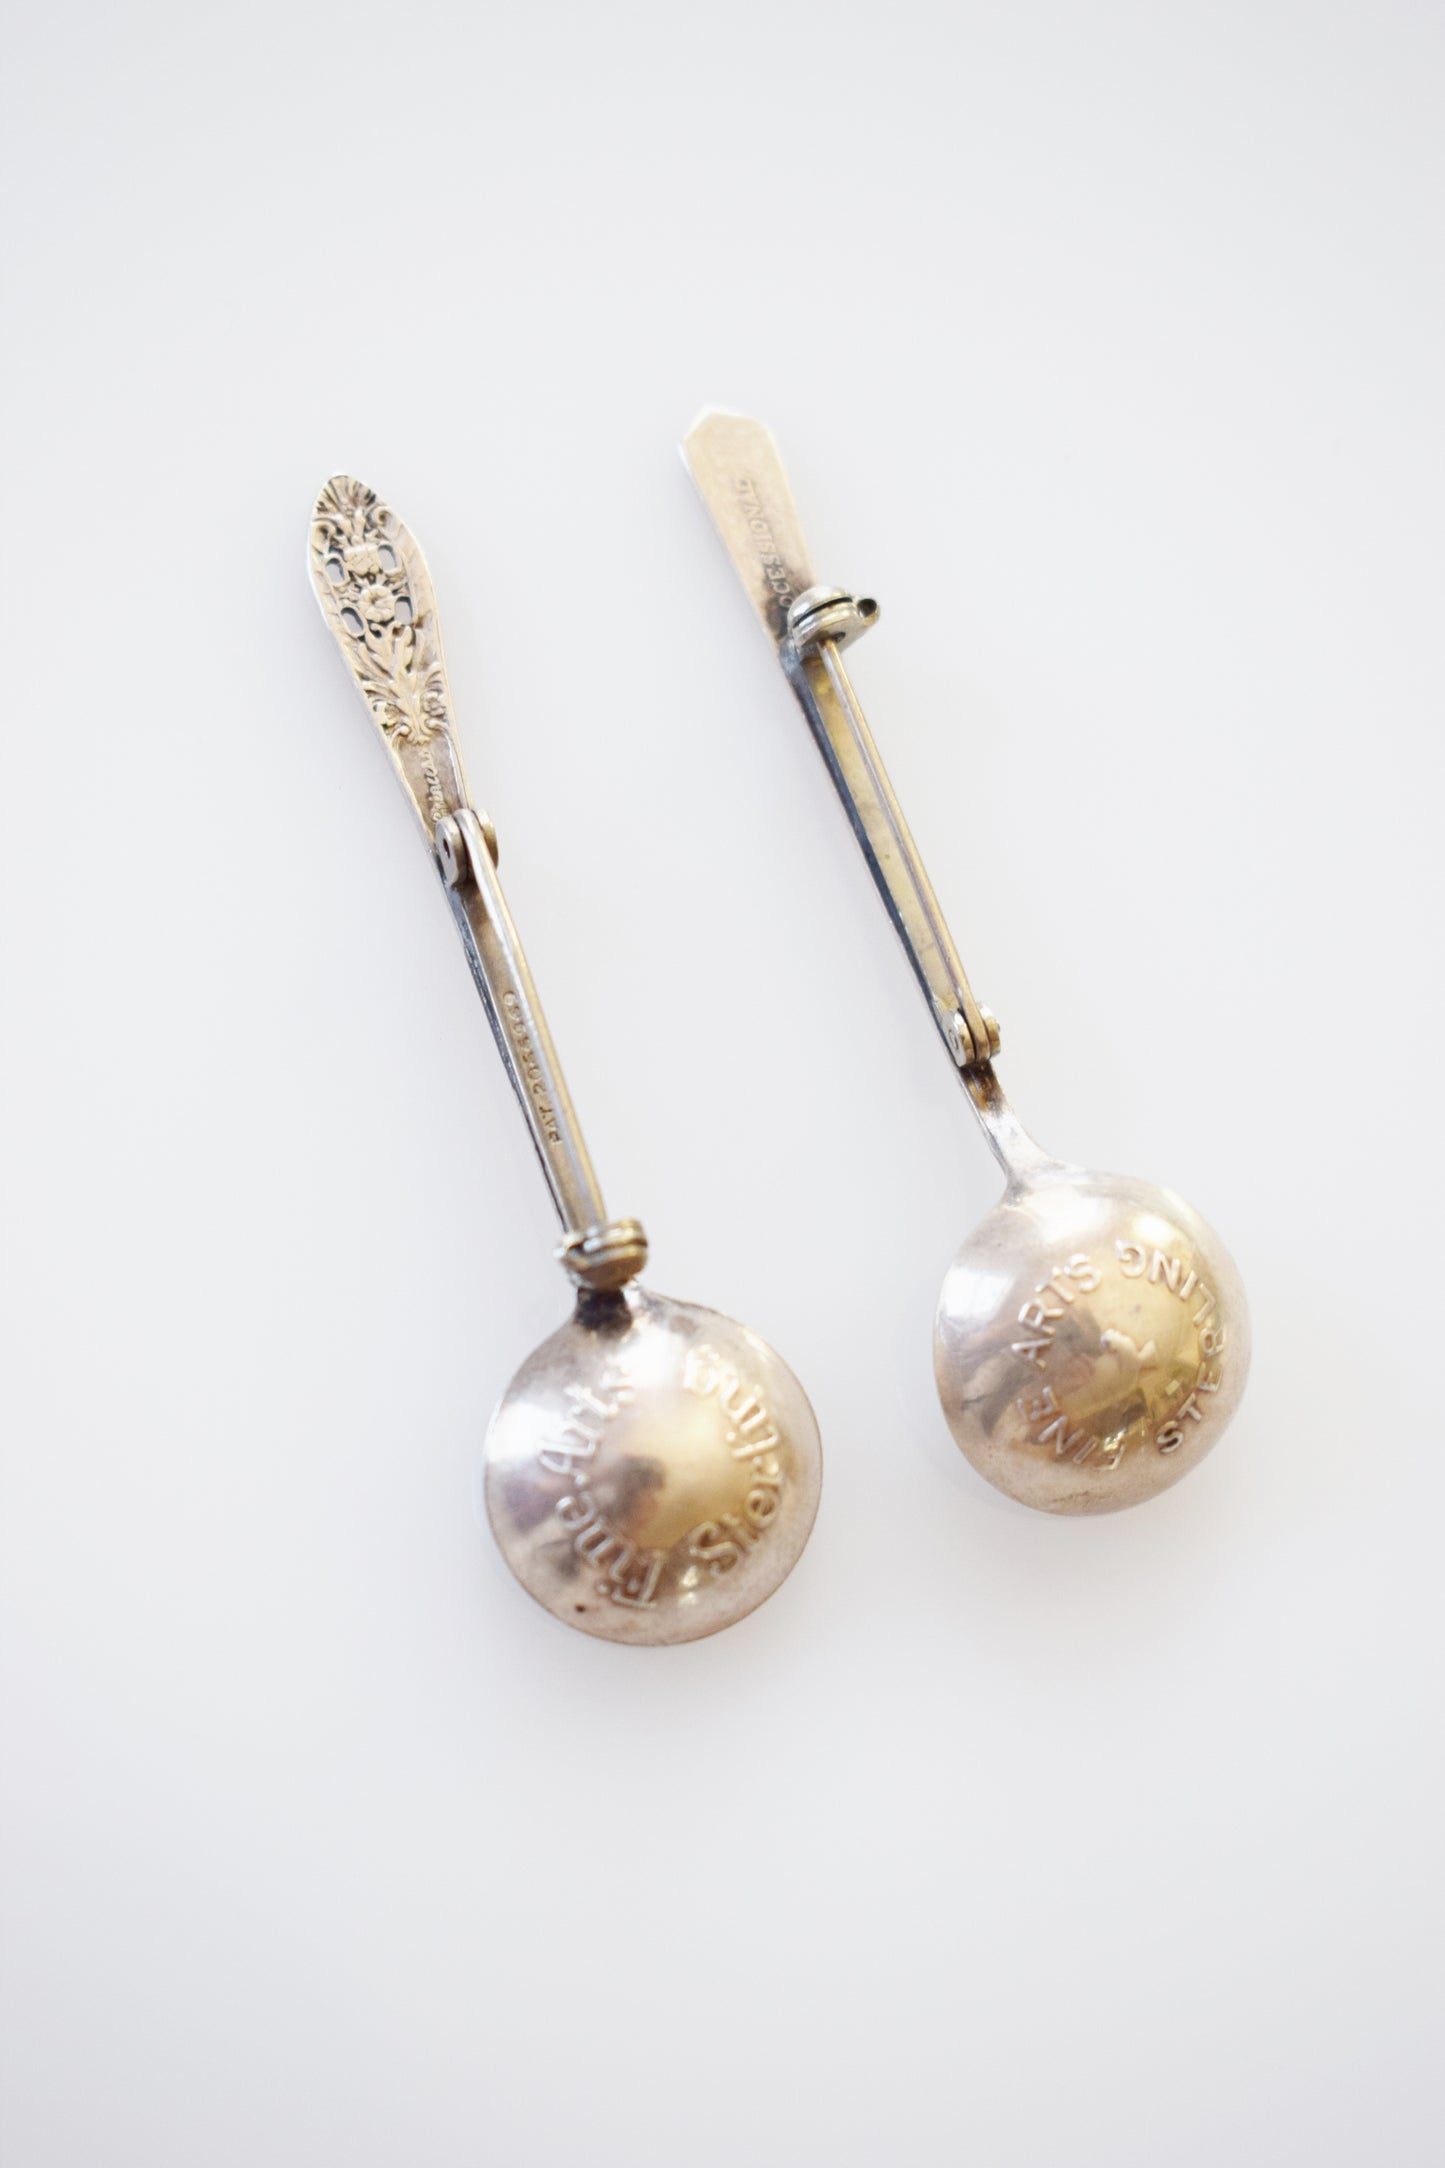 Pair of Vintage Sterling Silver Salt Spoon Pins